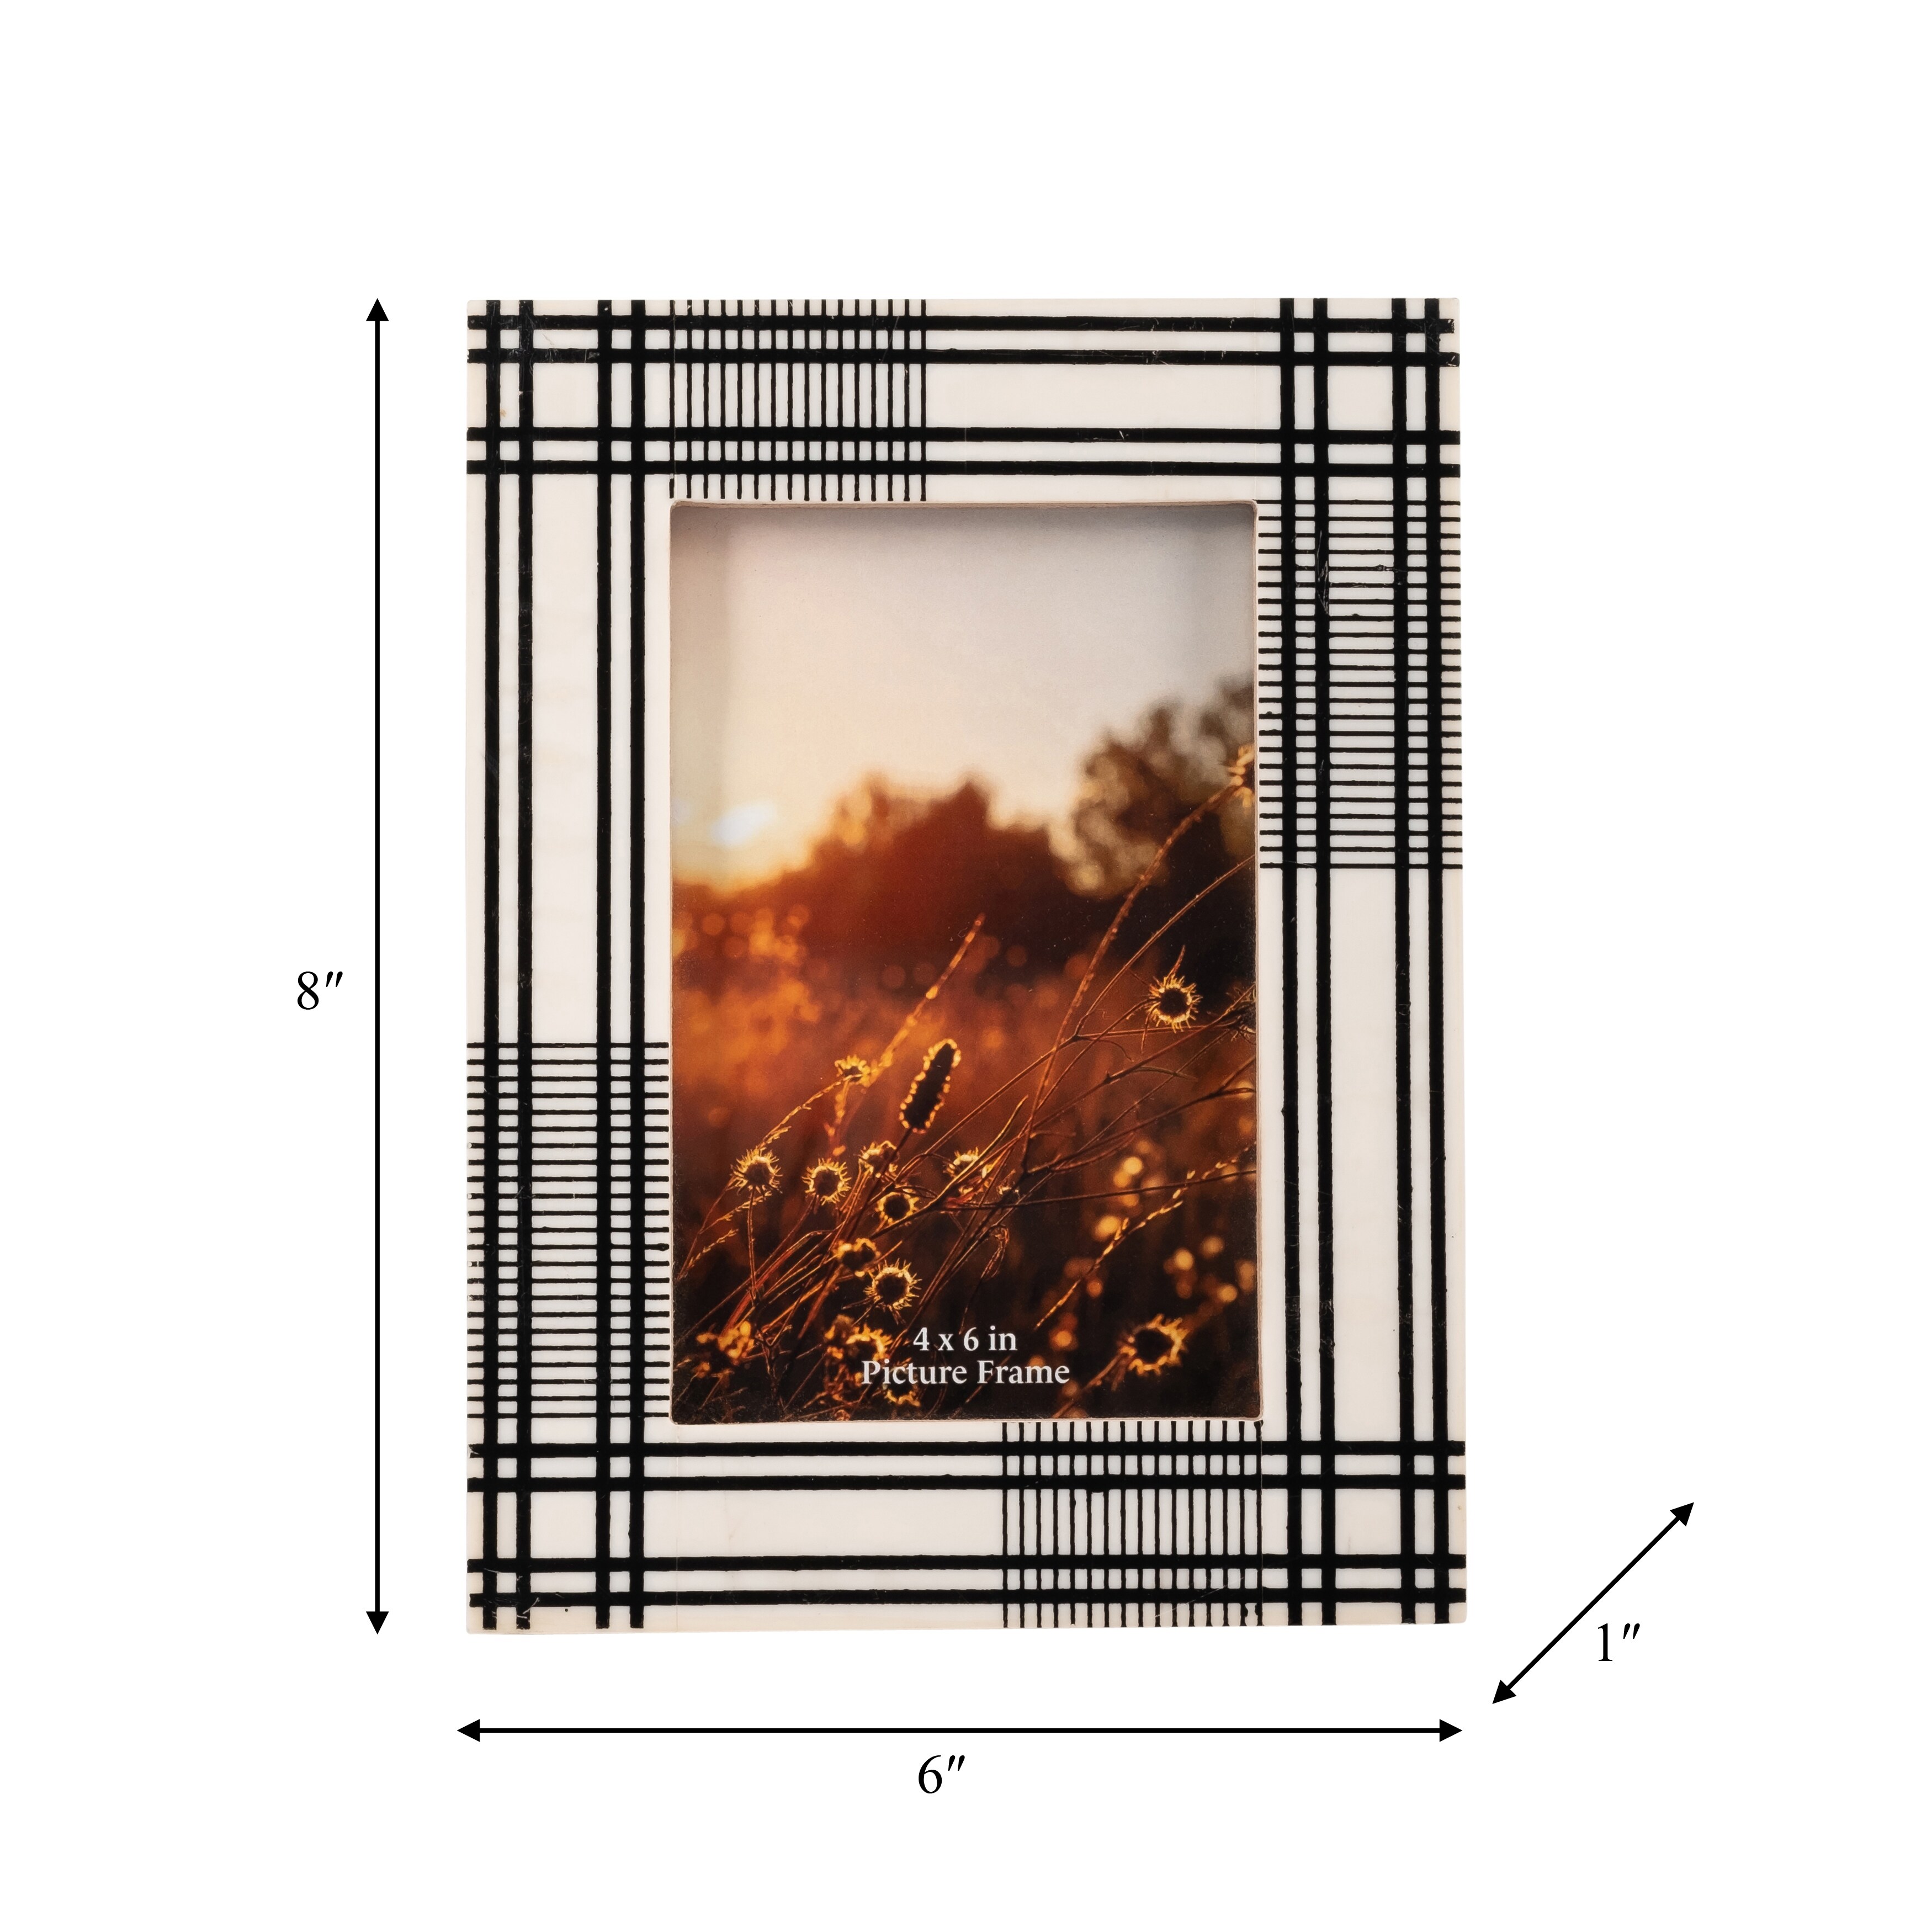 Weave & Cross Frame, White, 4x6 Photo, 8, Resin